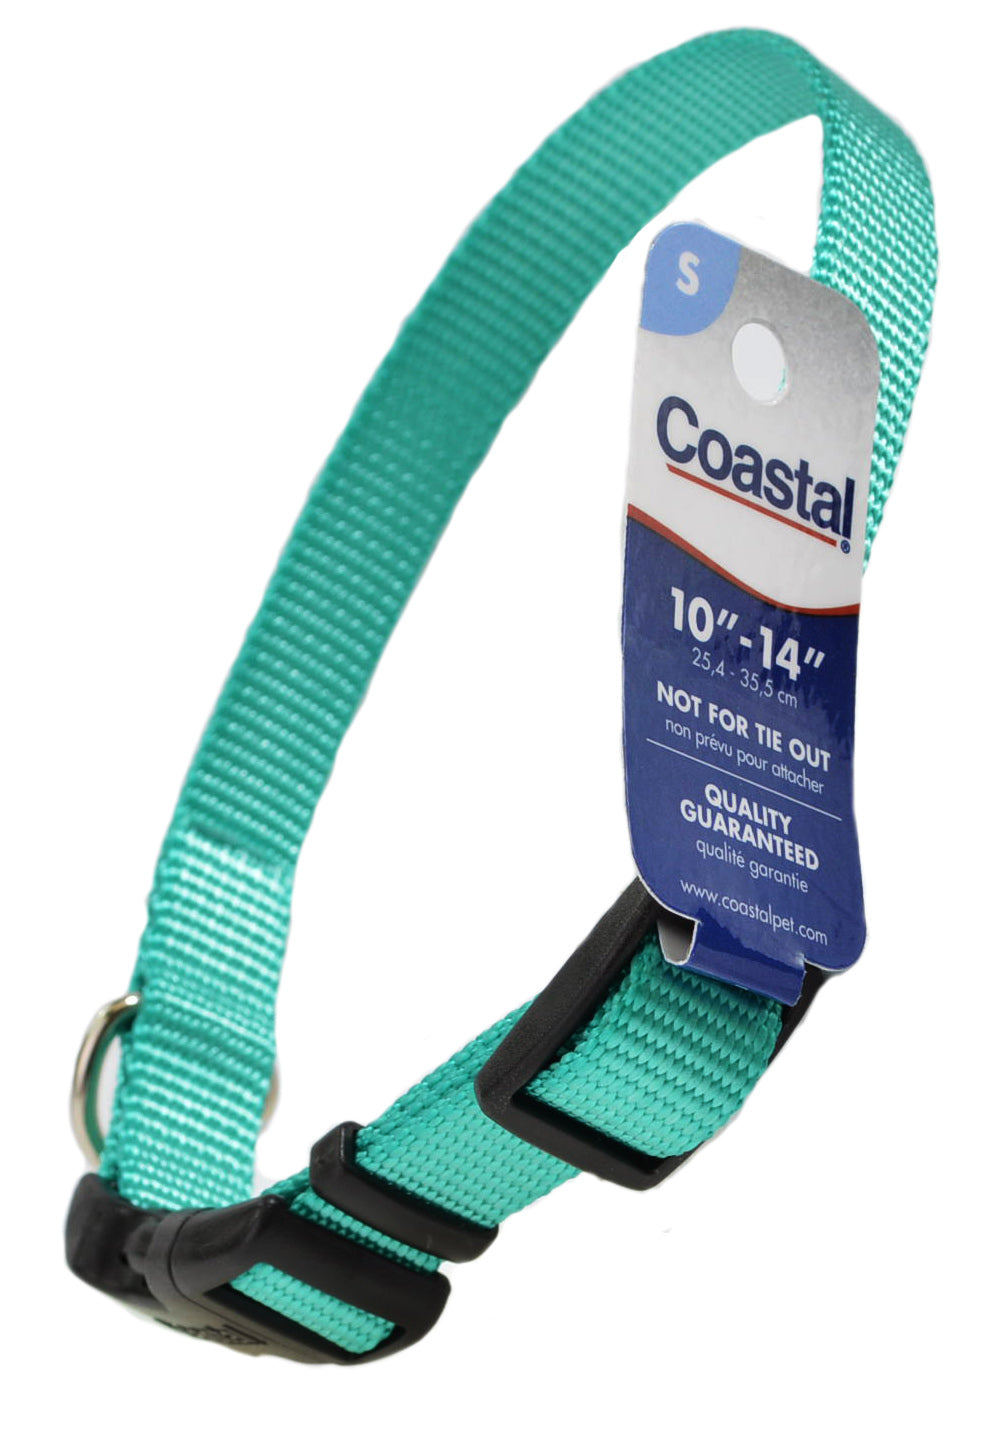 Coastal Pet Teal Nylon Tuff Dog Collar - PetMountain.com